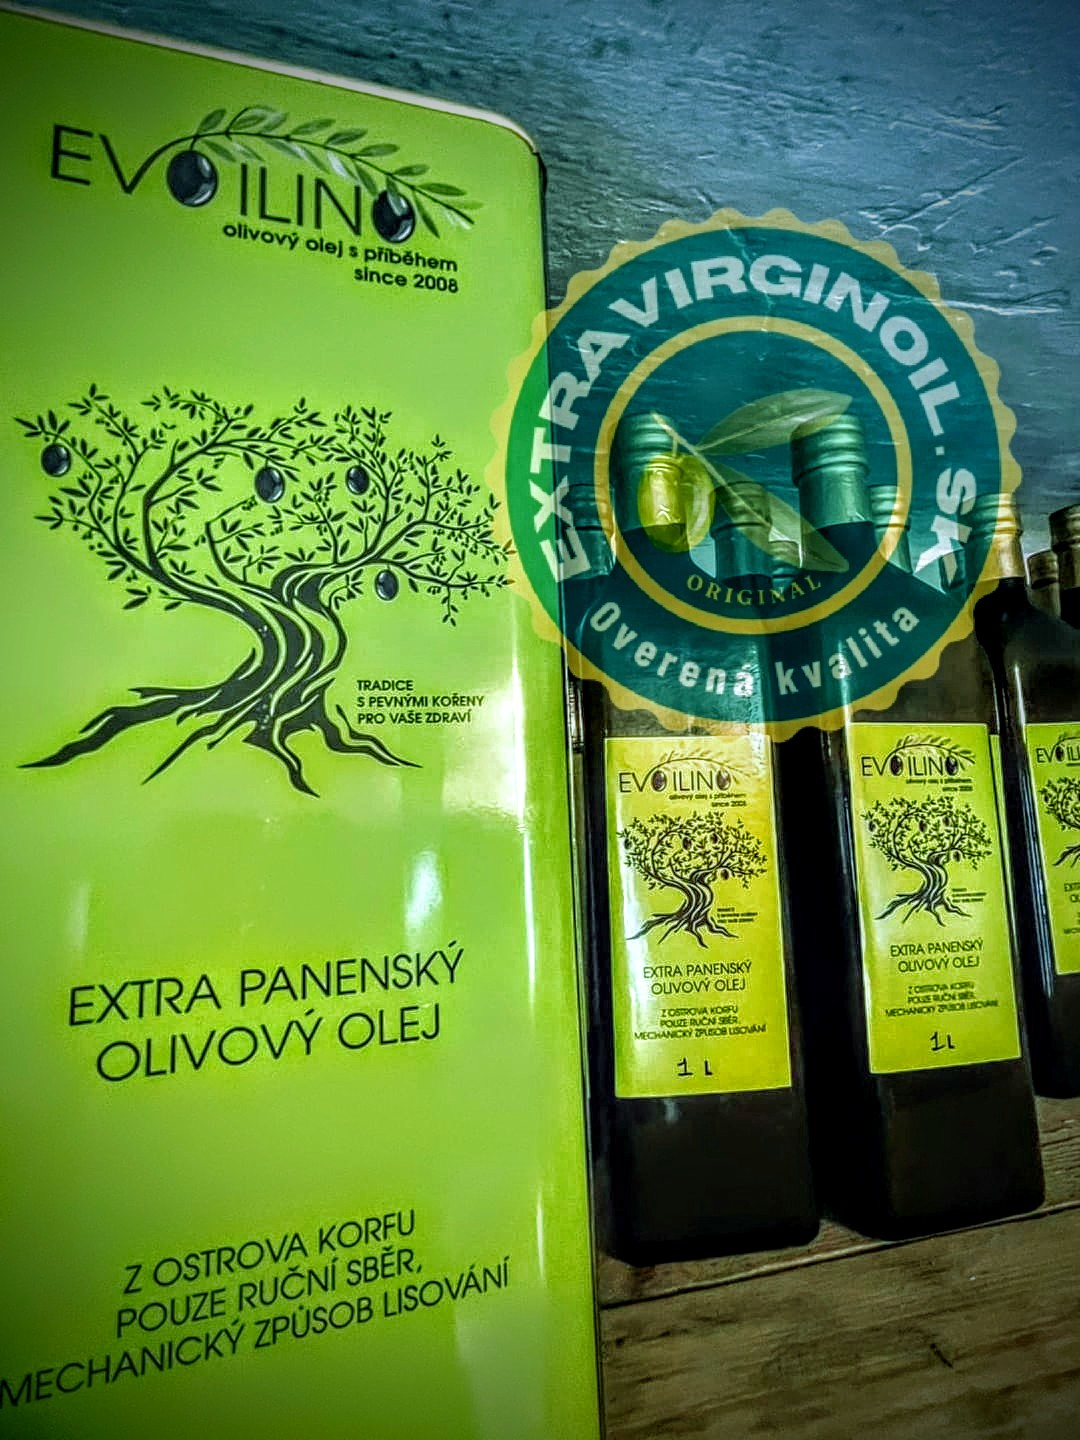 Zelený štvrtok a olivový olej